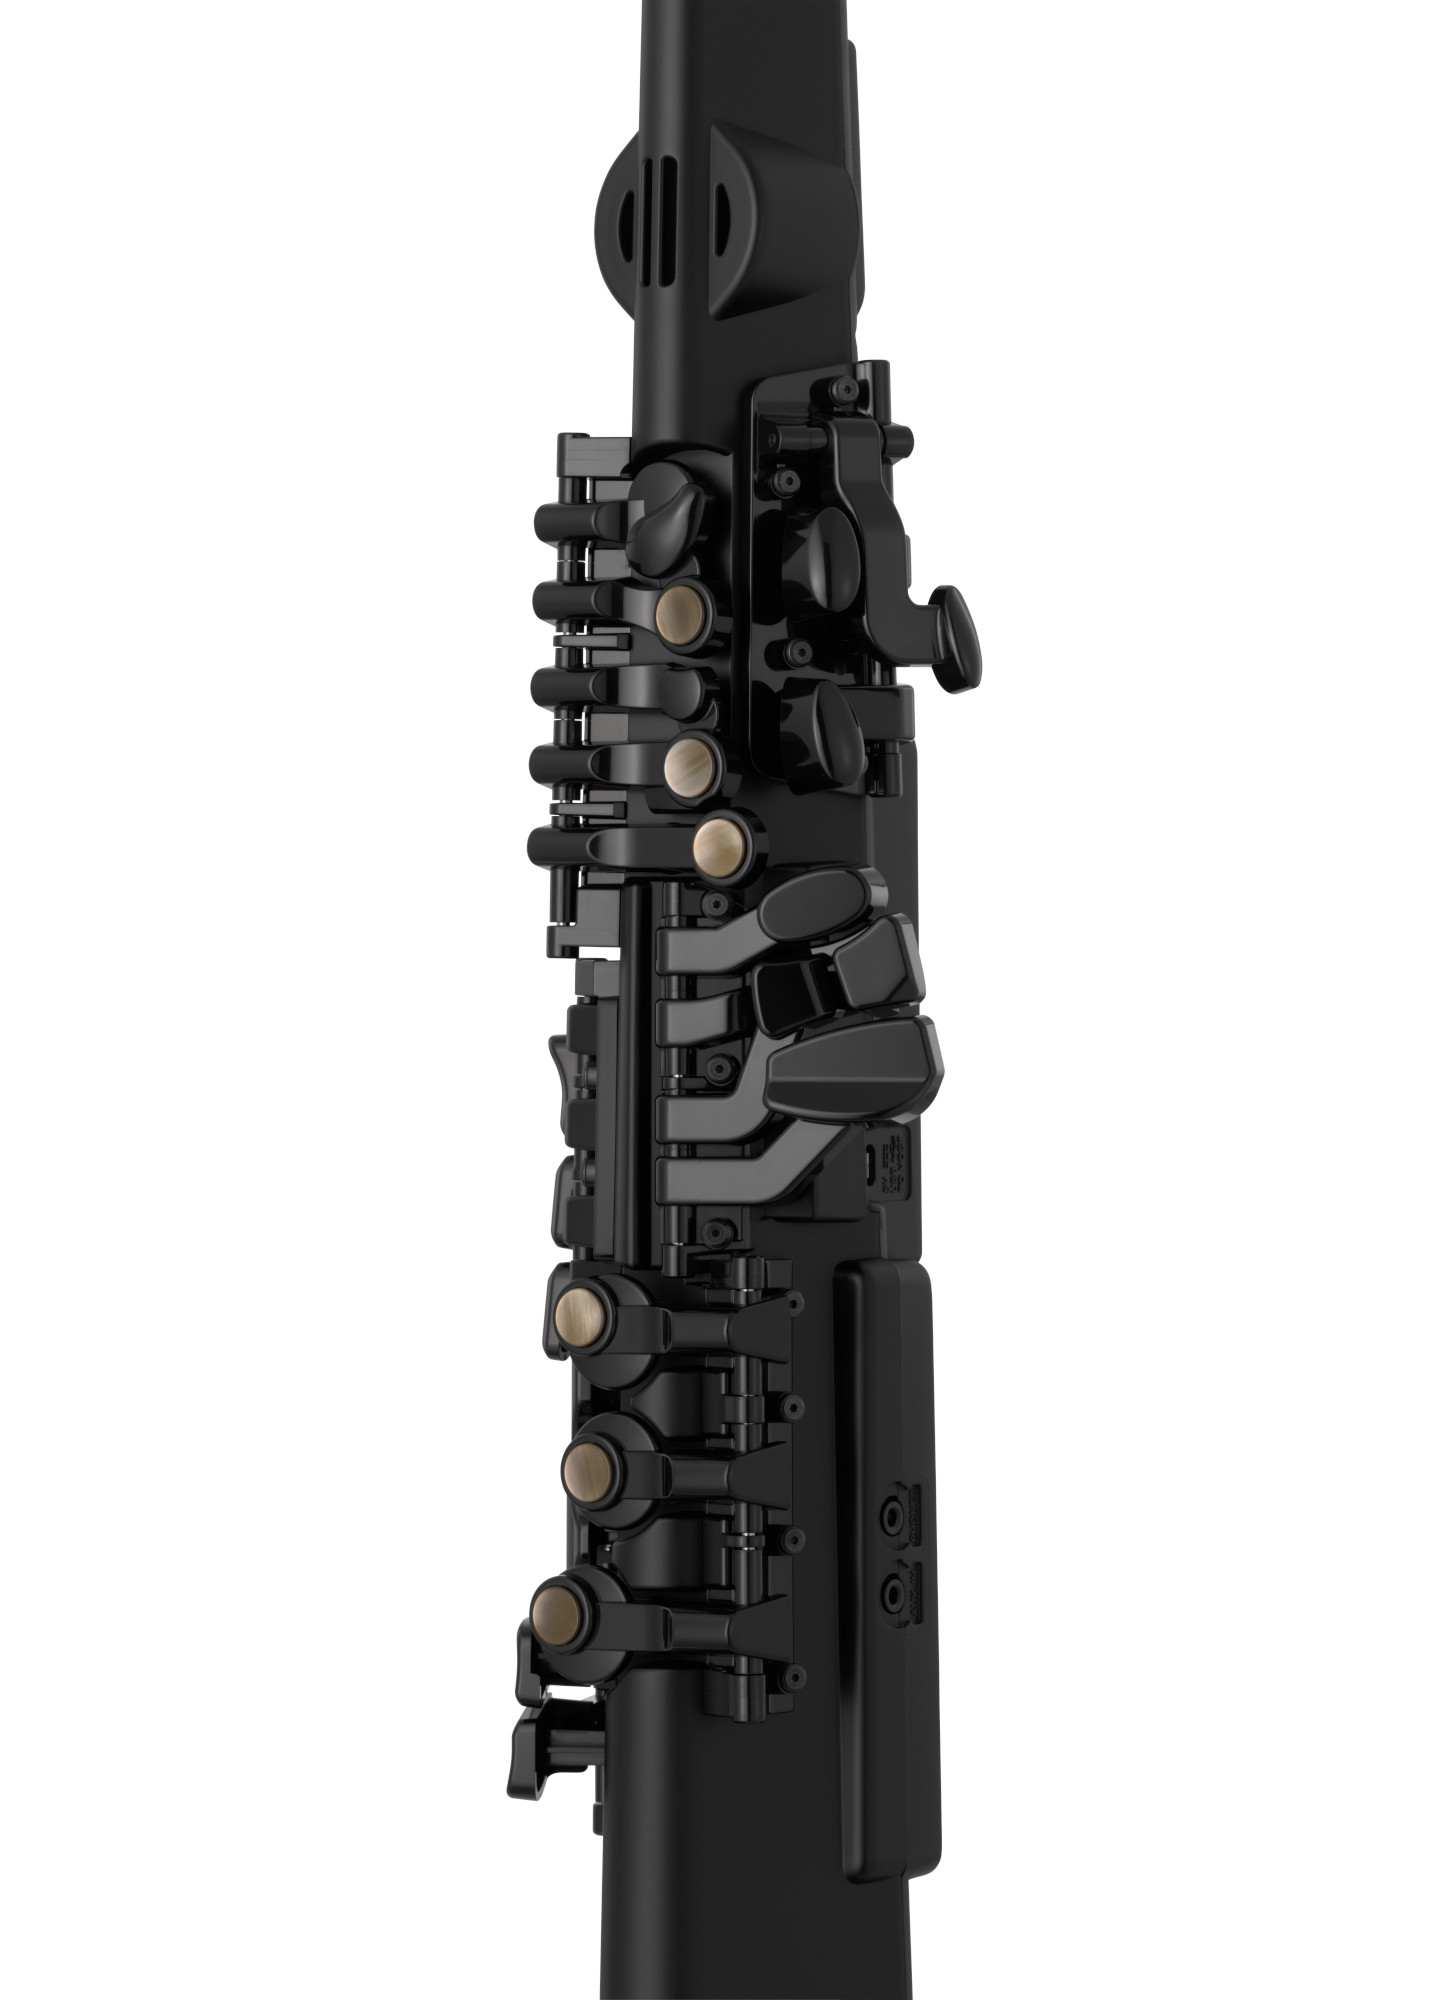 Yamaha Yds-120 Digital Saxophone - Electronic Wind Instrument - Variation 7